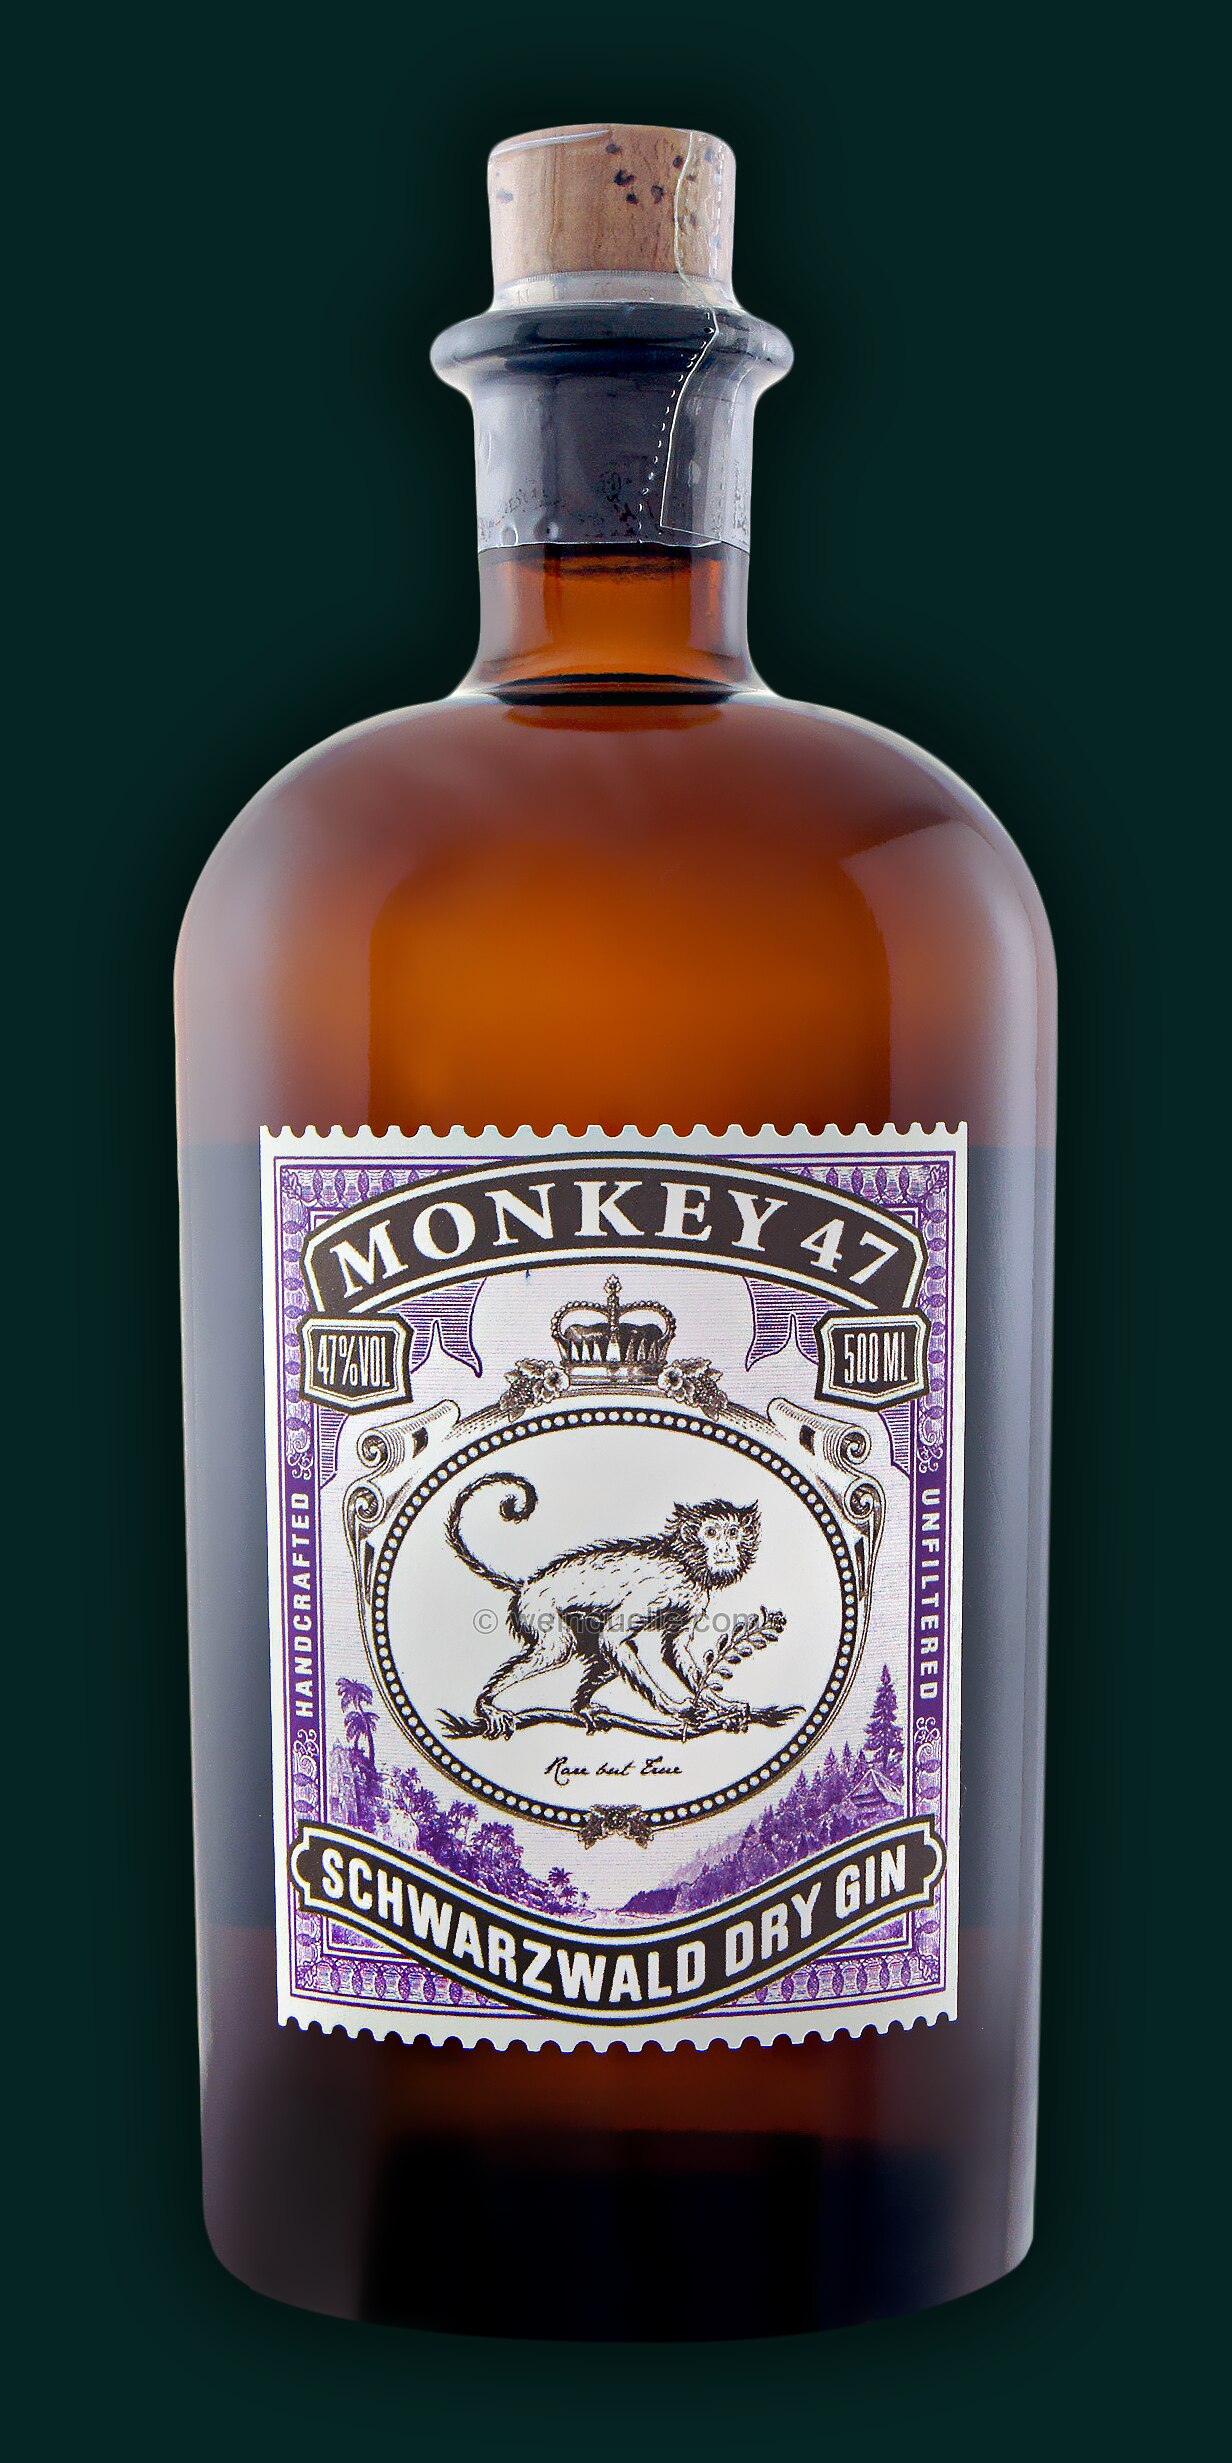 Monkey 47 Schwarzwald Dry Gin, 34,50 € - Weinquelle Lühmann